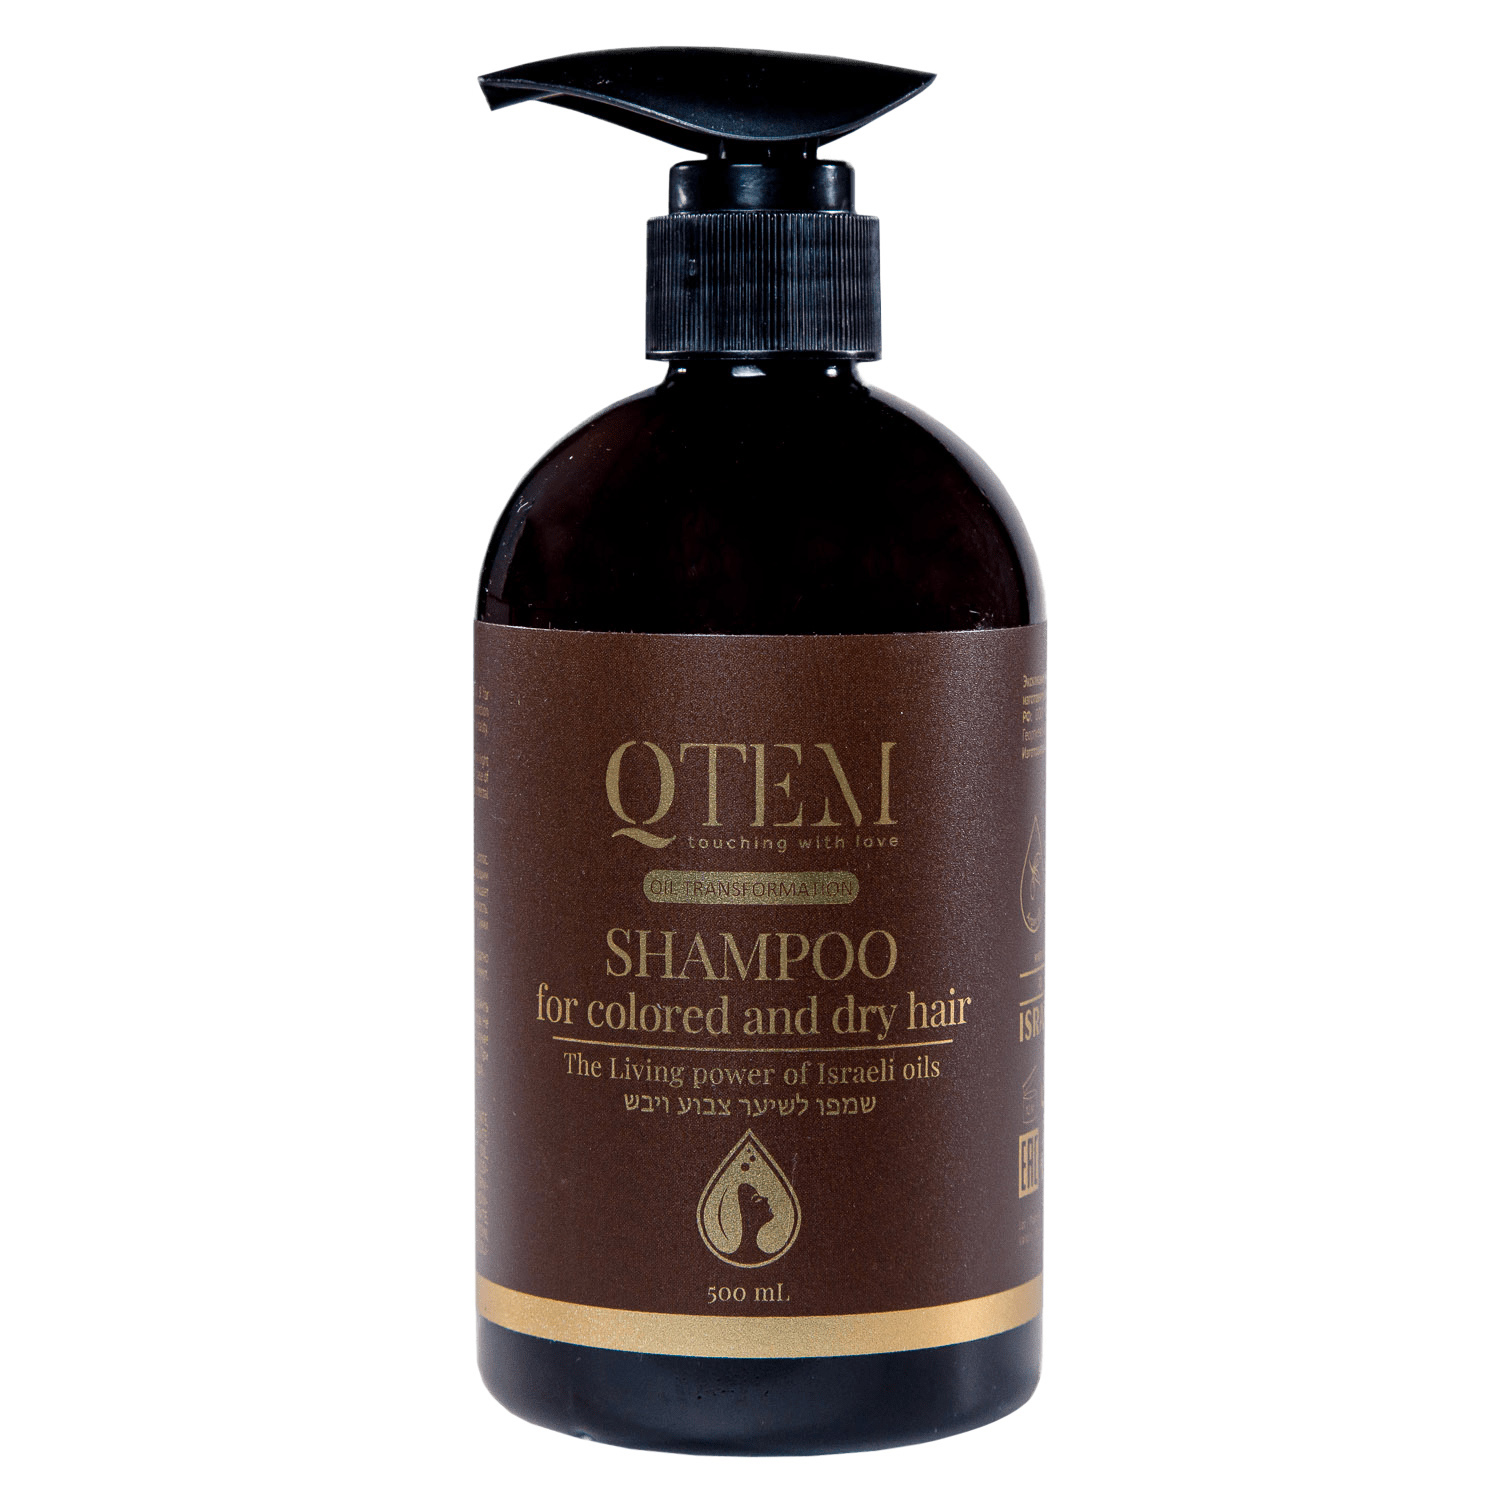 Qtem Шампунь для окрашенных и сухих волос, 500 мл (Qtem, Oil Transformation) фото